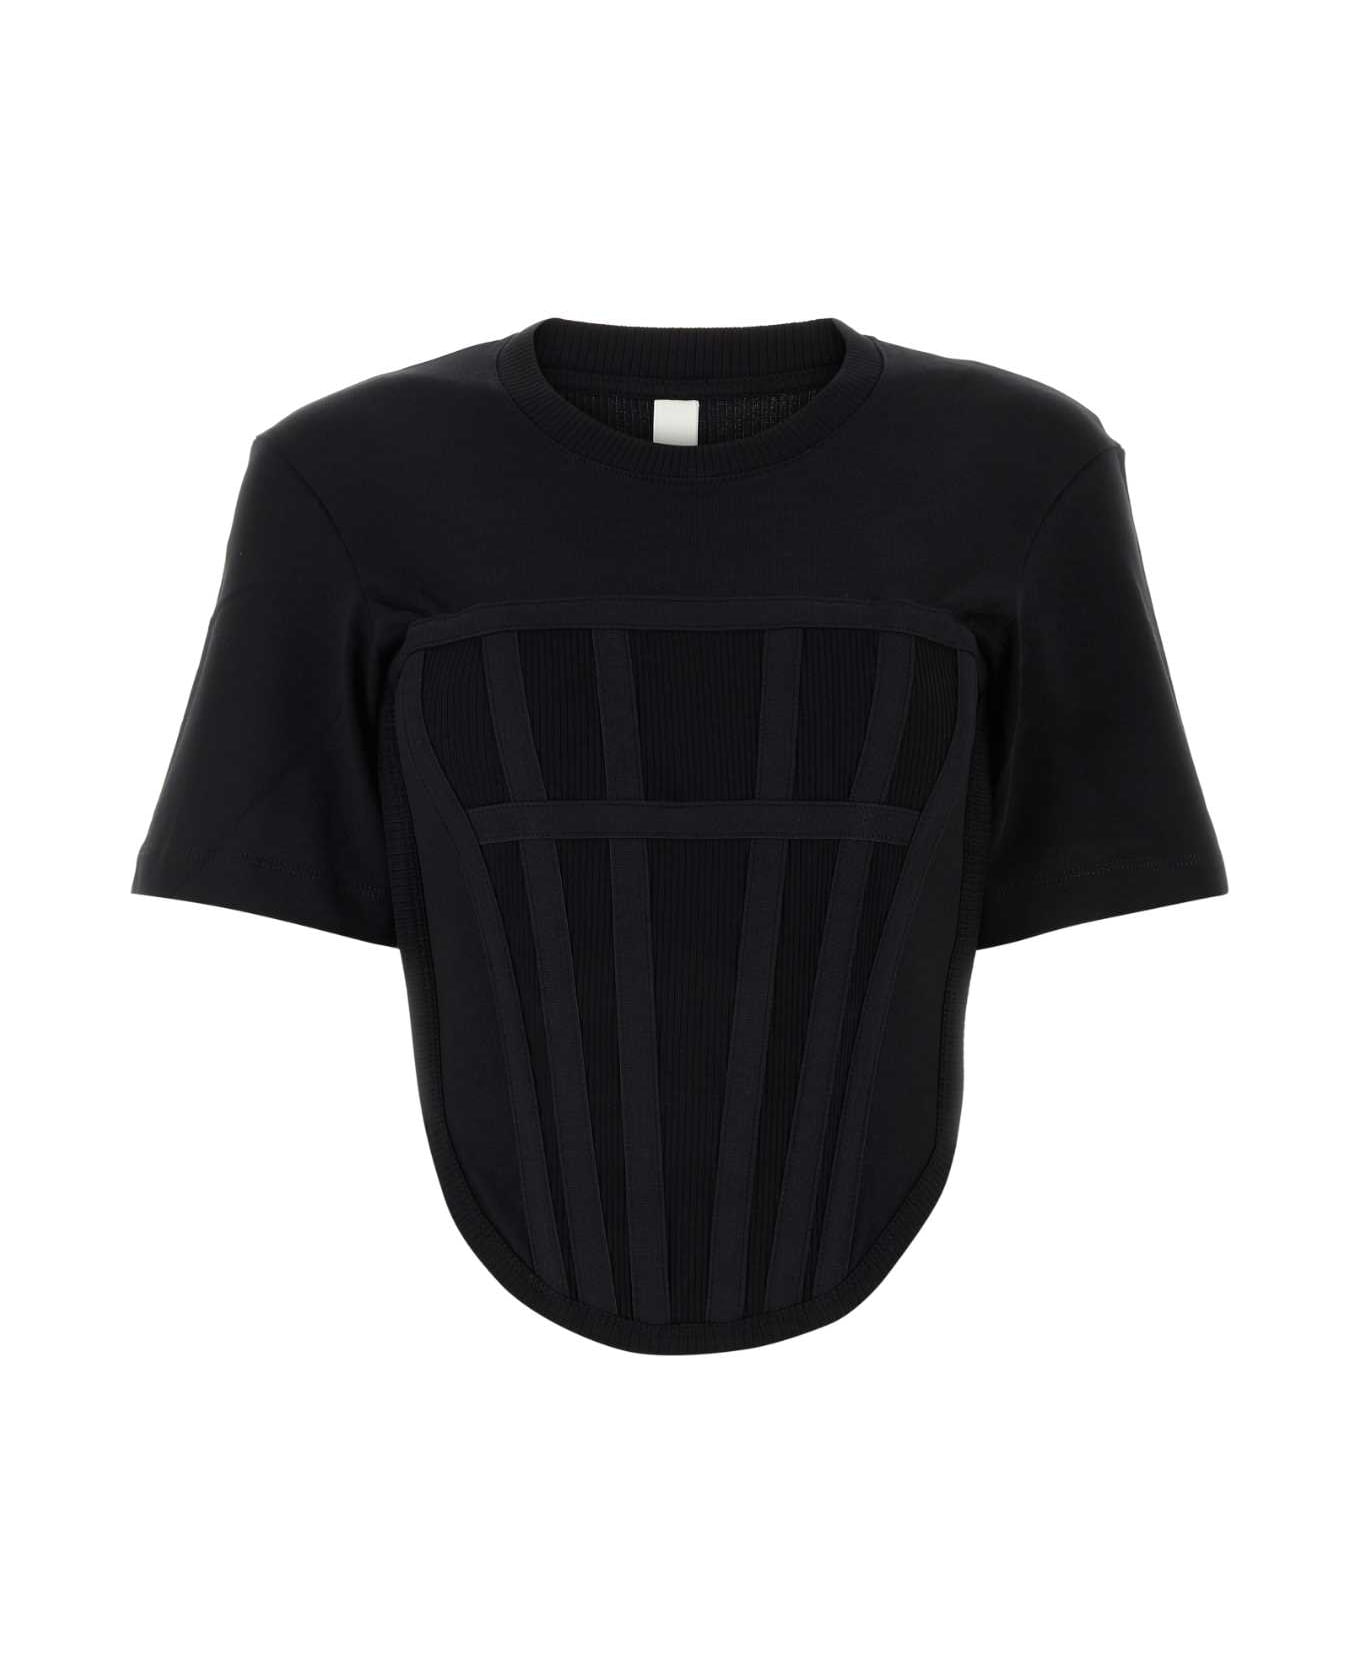 Dion Lee Black Cotton T-shirt - BLACK Tシャツ